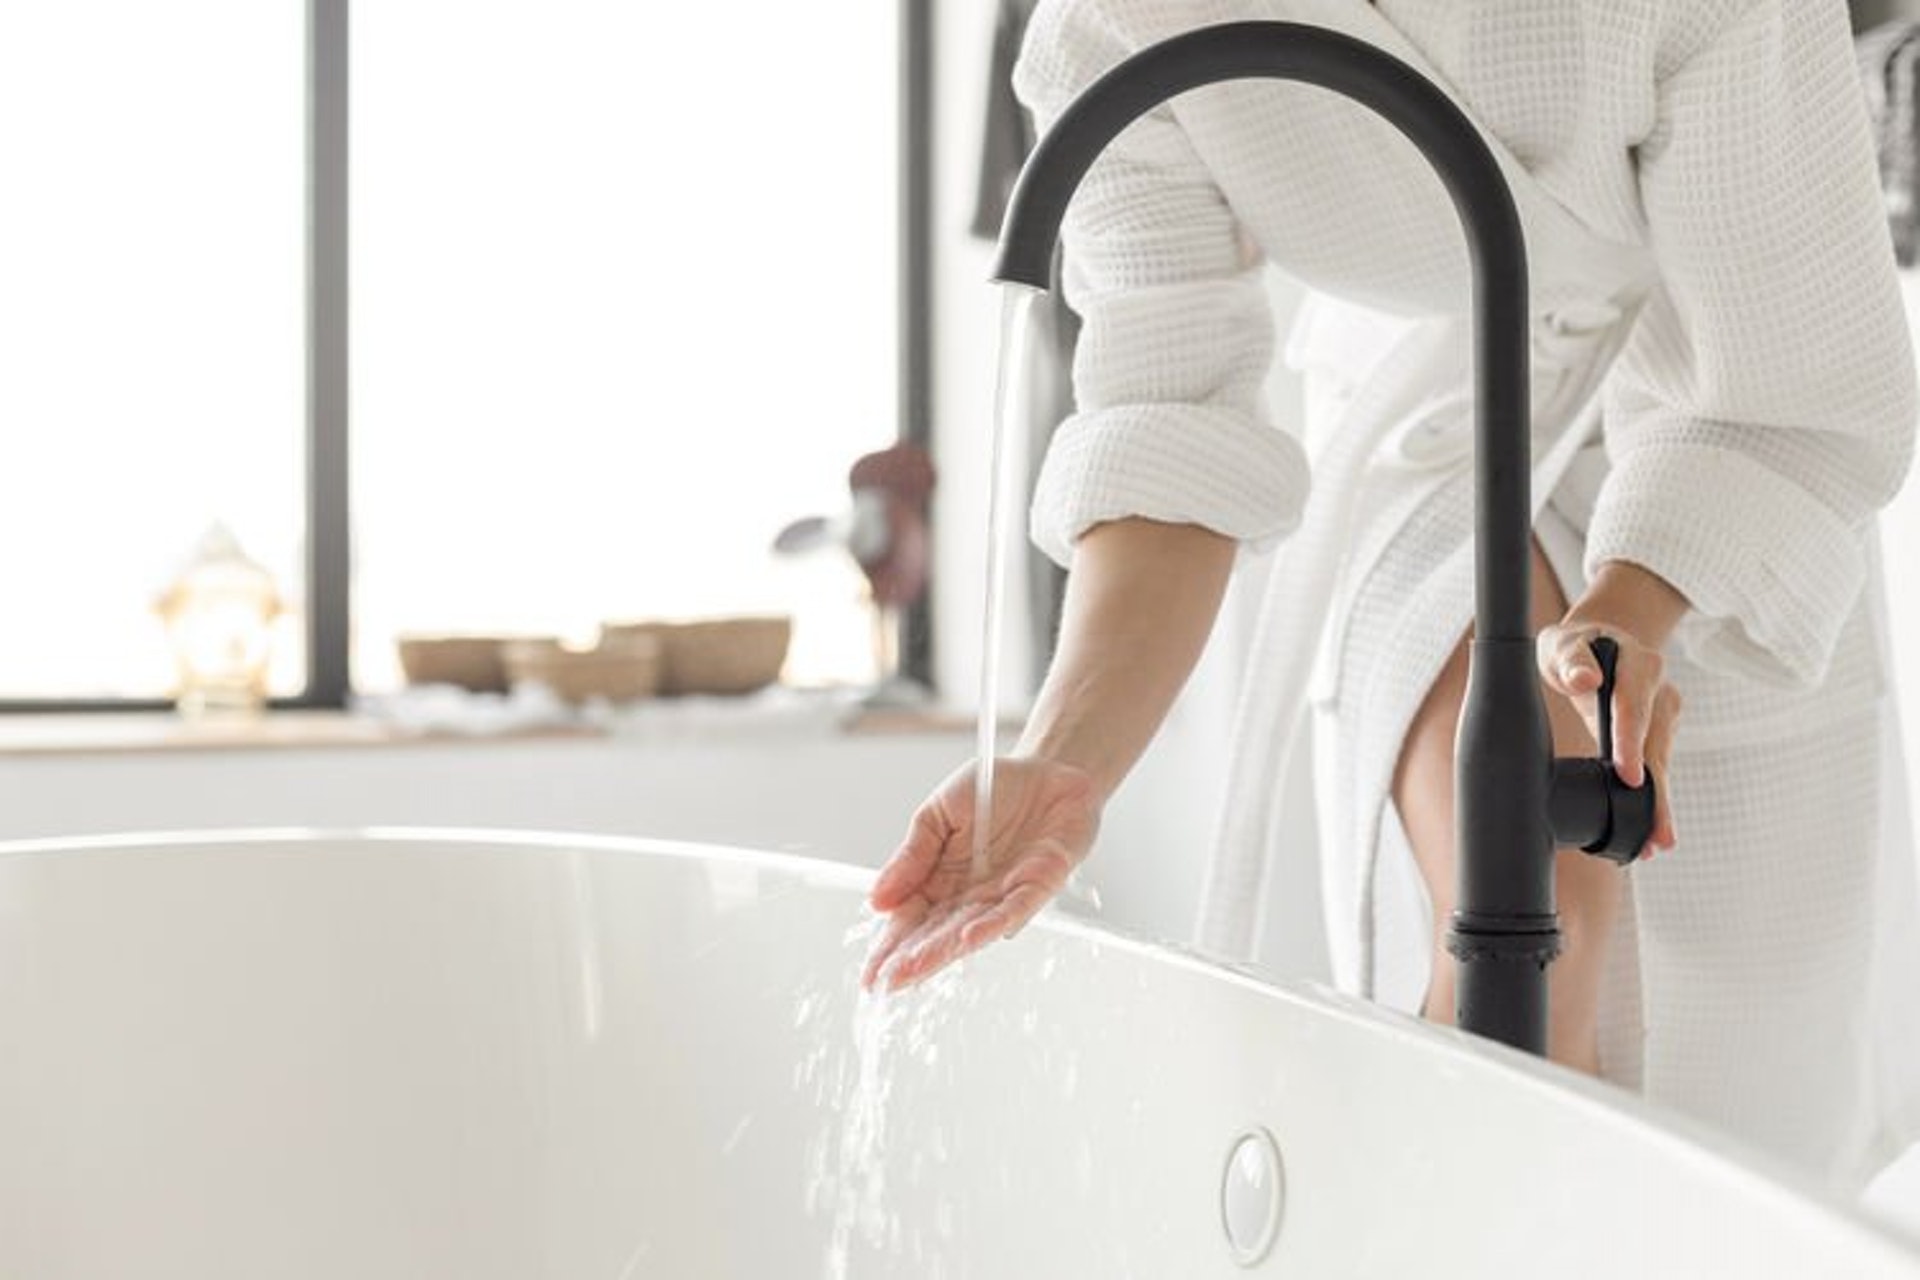 「暖薑系列」的研發始於一個偶然發現，在浸浴時加入薑汁後發現感覺溫暖而舒暢，便產生將薑融入個人護理產品的念頭。（圖片：Shutterstock）